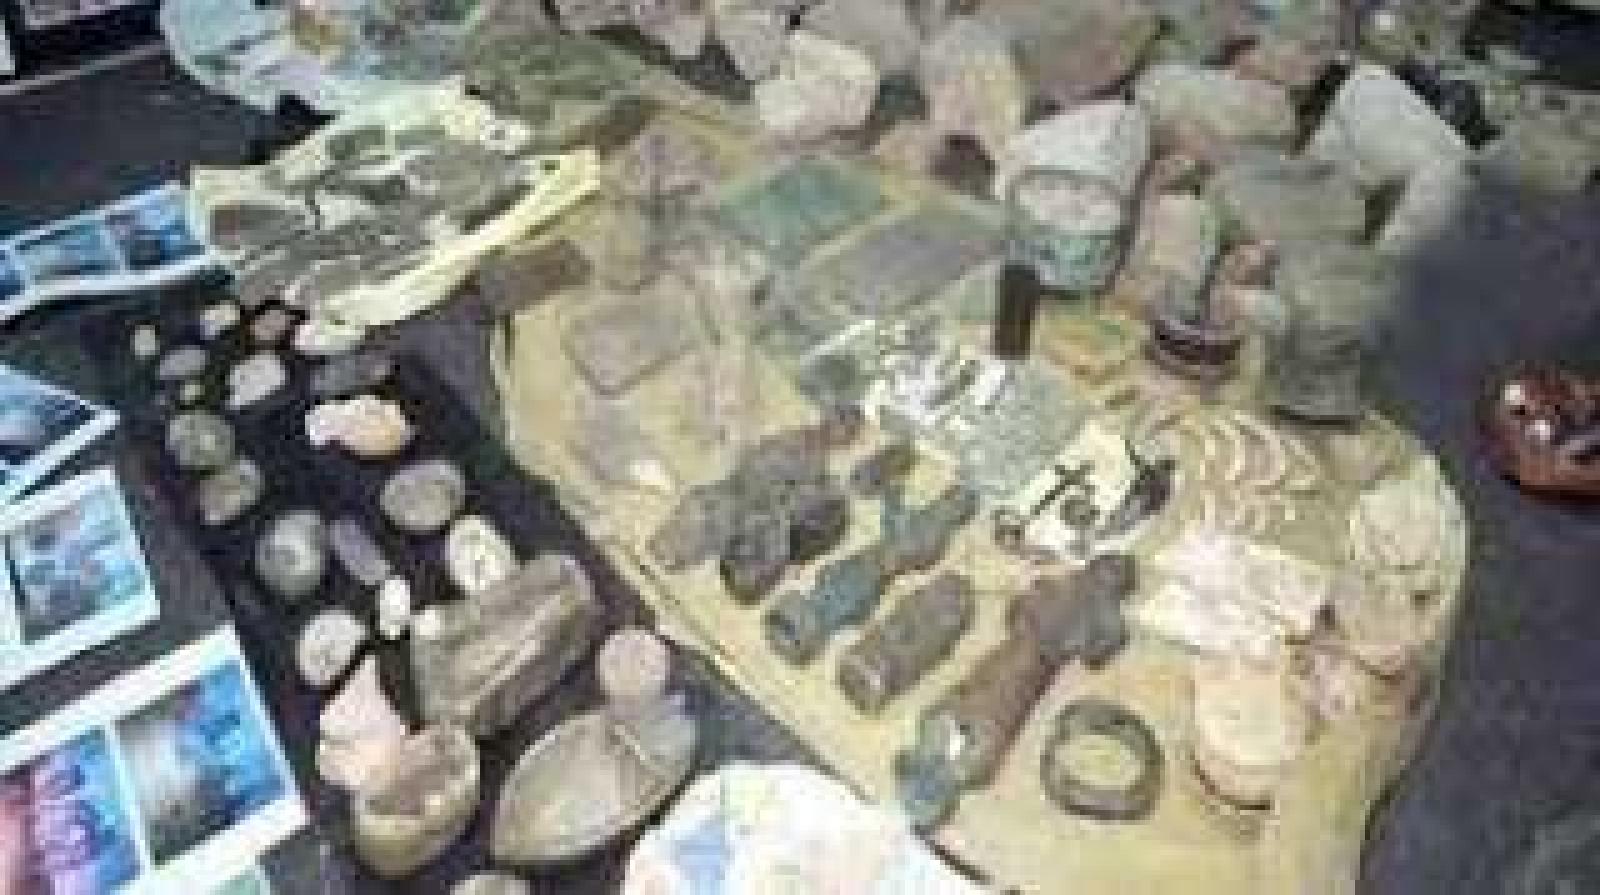 صور للقاء والاثار المنهوبة من متحف بينون بذمار ، موقع اليمن العربي ، ٦ فبراير ۲۰۱۹